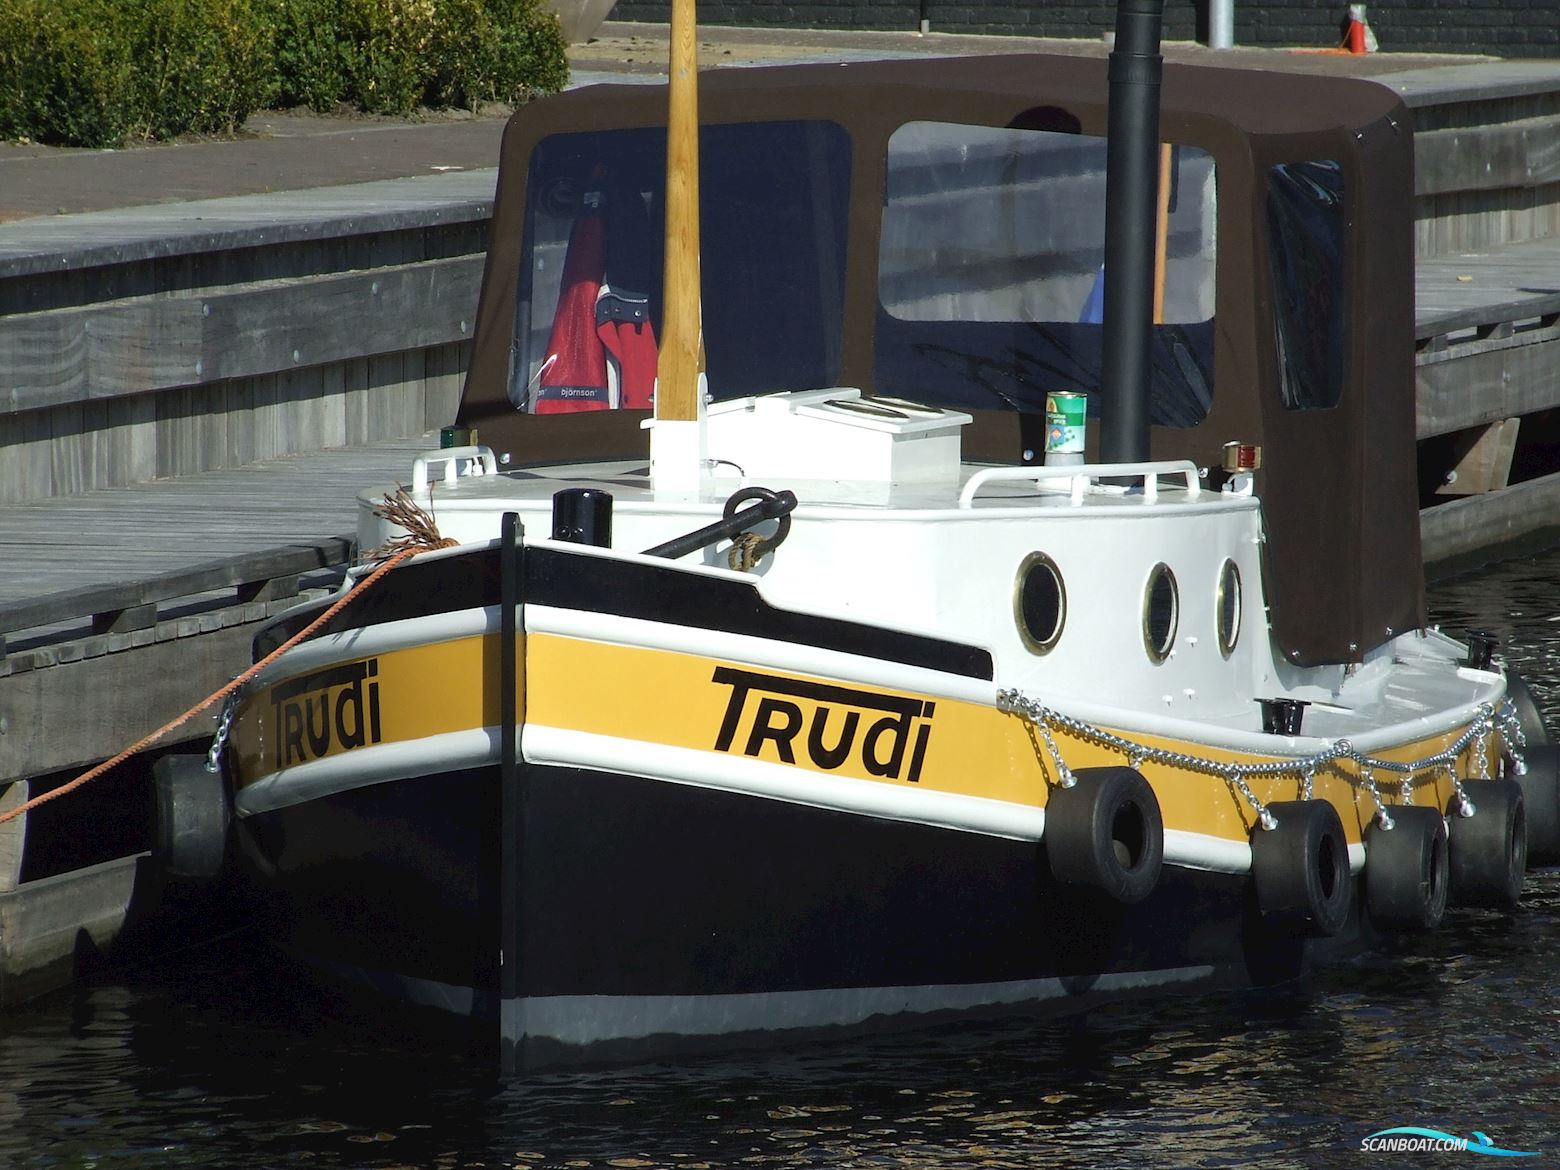 Opduwer 6.00 Motorbåt 2010, med Lambardini motor, Holland